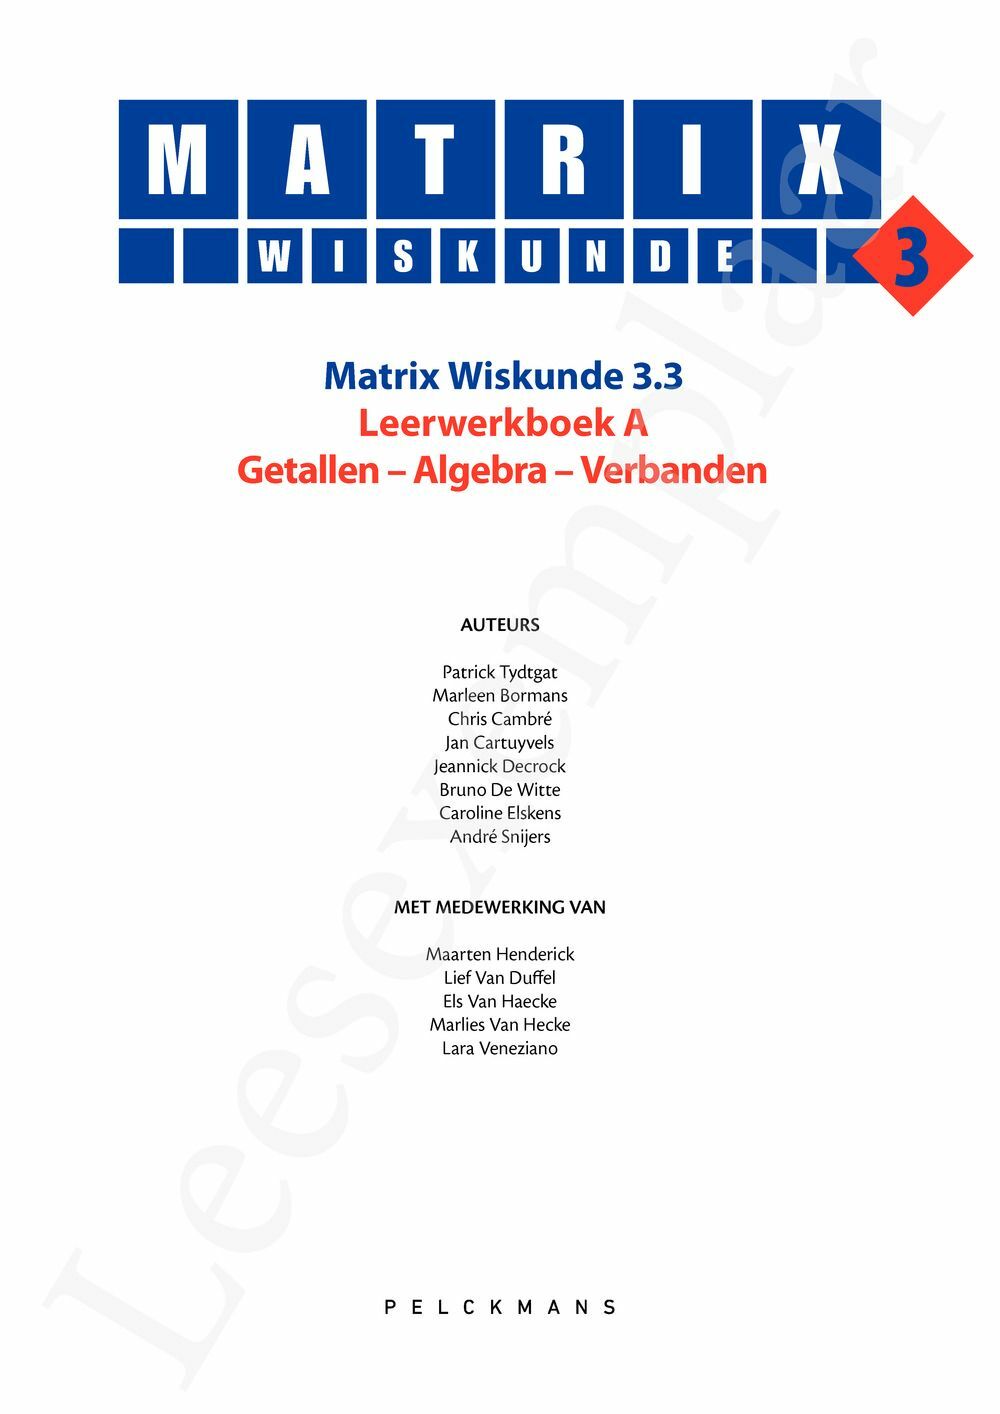 Preview: Matrix Wiskunde 3.3 Leerwerkboek A Getallen - Algebra - Verbanden (incl. Pelckmans Portaal)